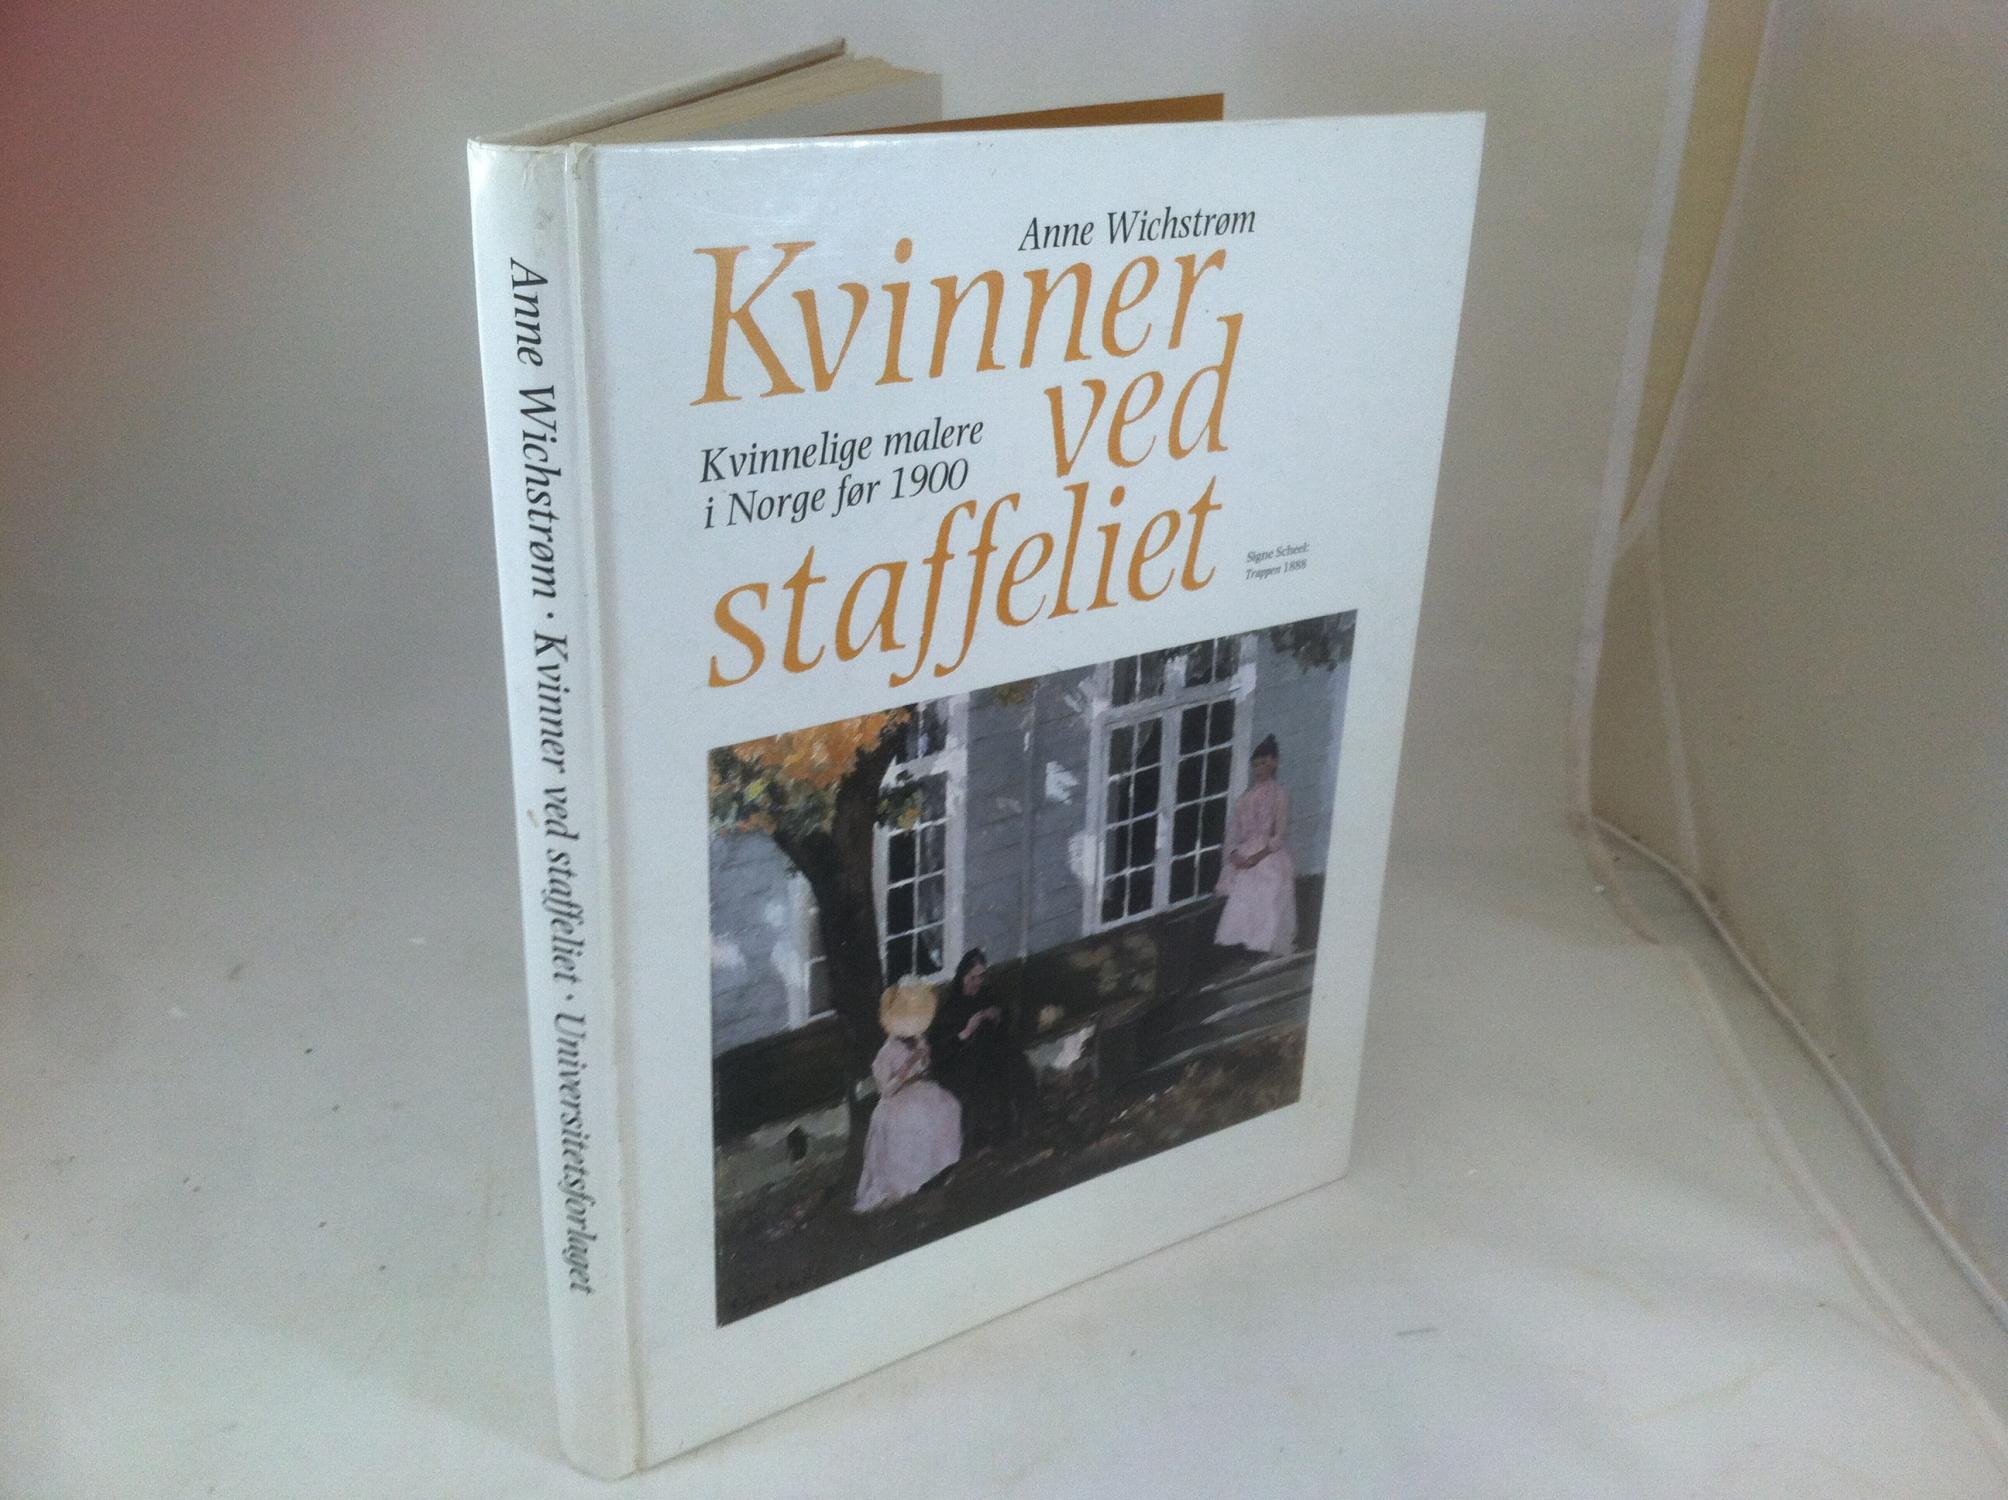 Kvinner ved staffeliet: Kvinnelige malere i Norge før 1990 (Norwegian Edition)